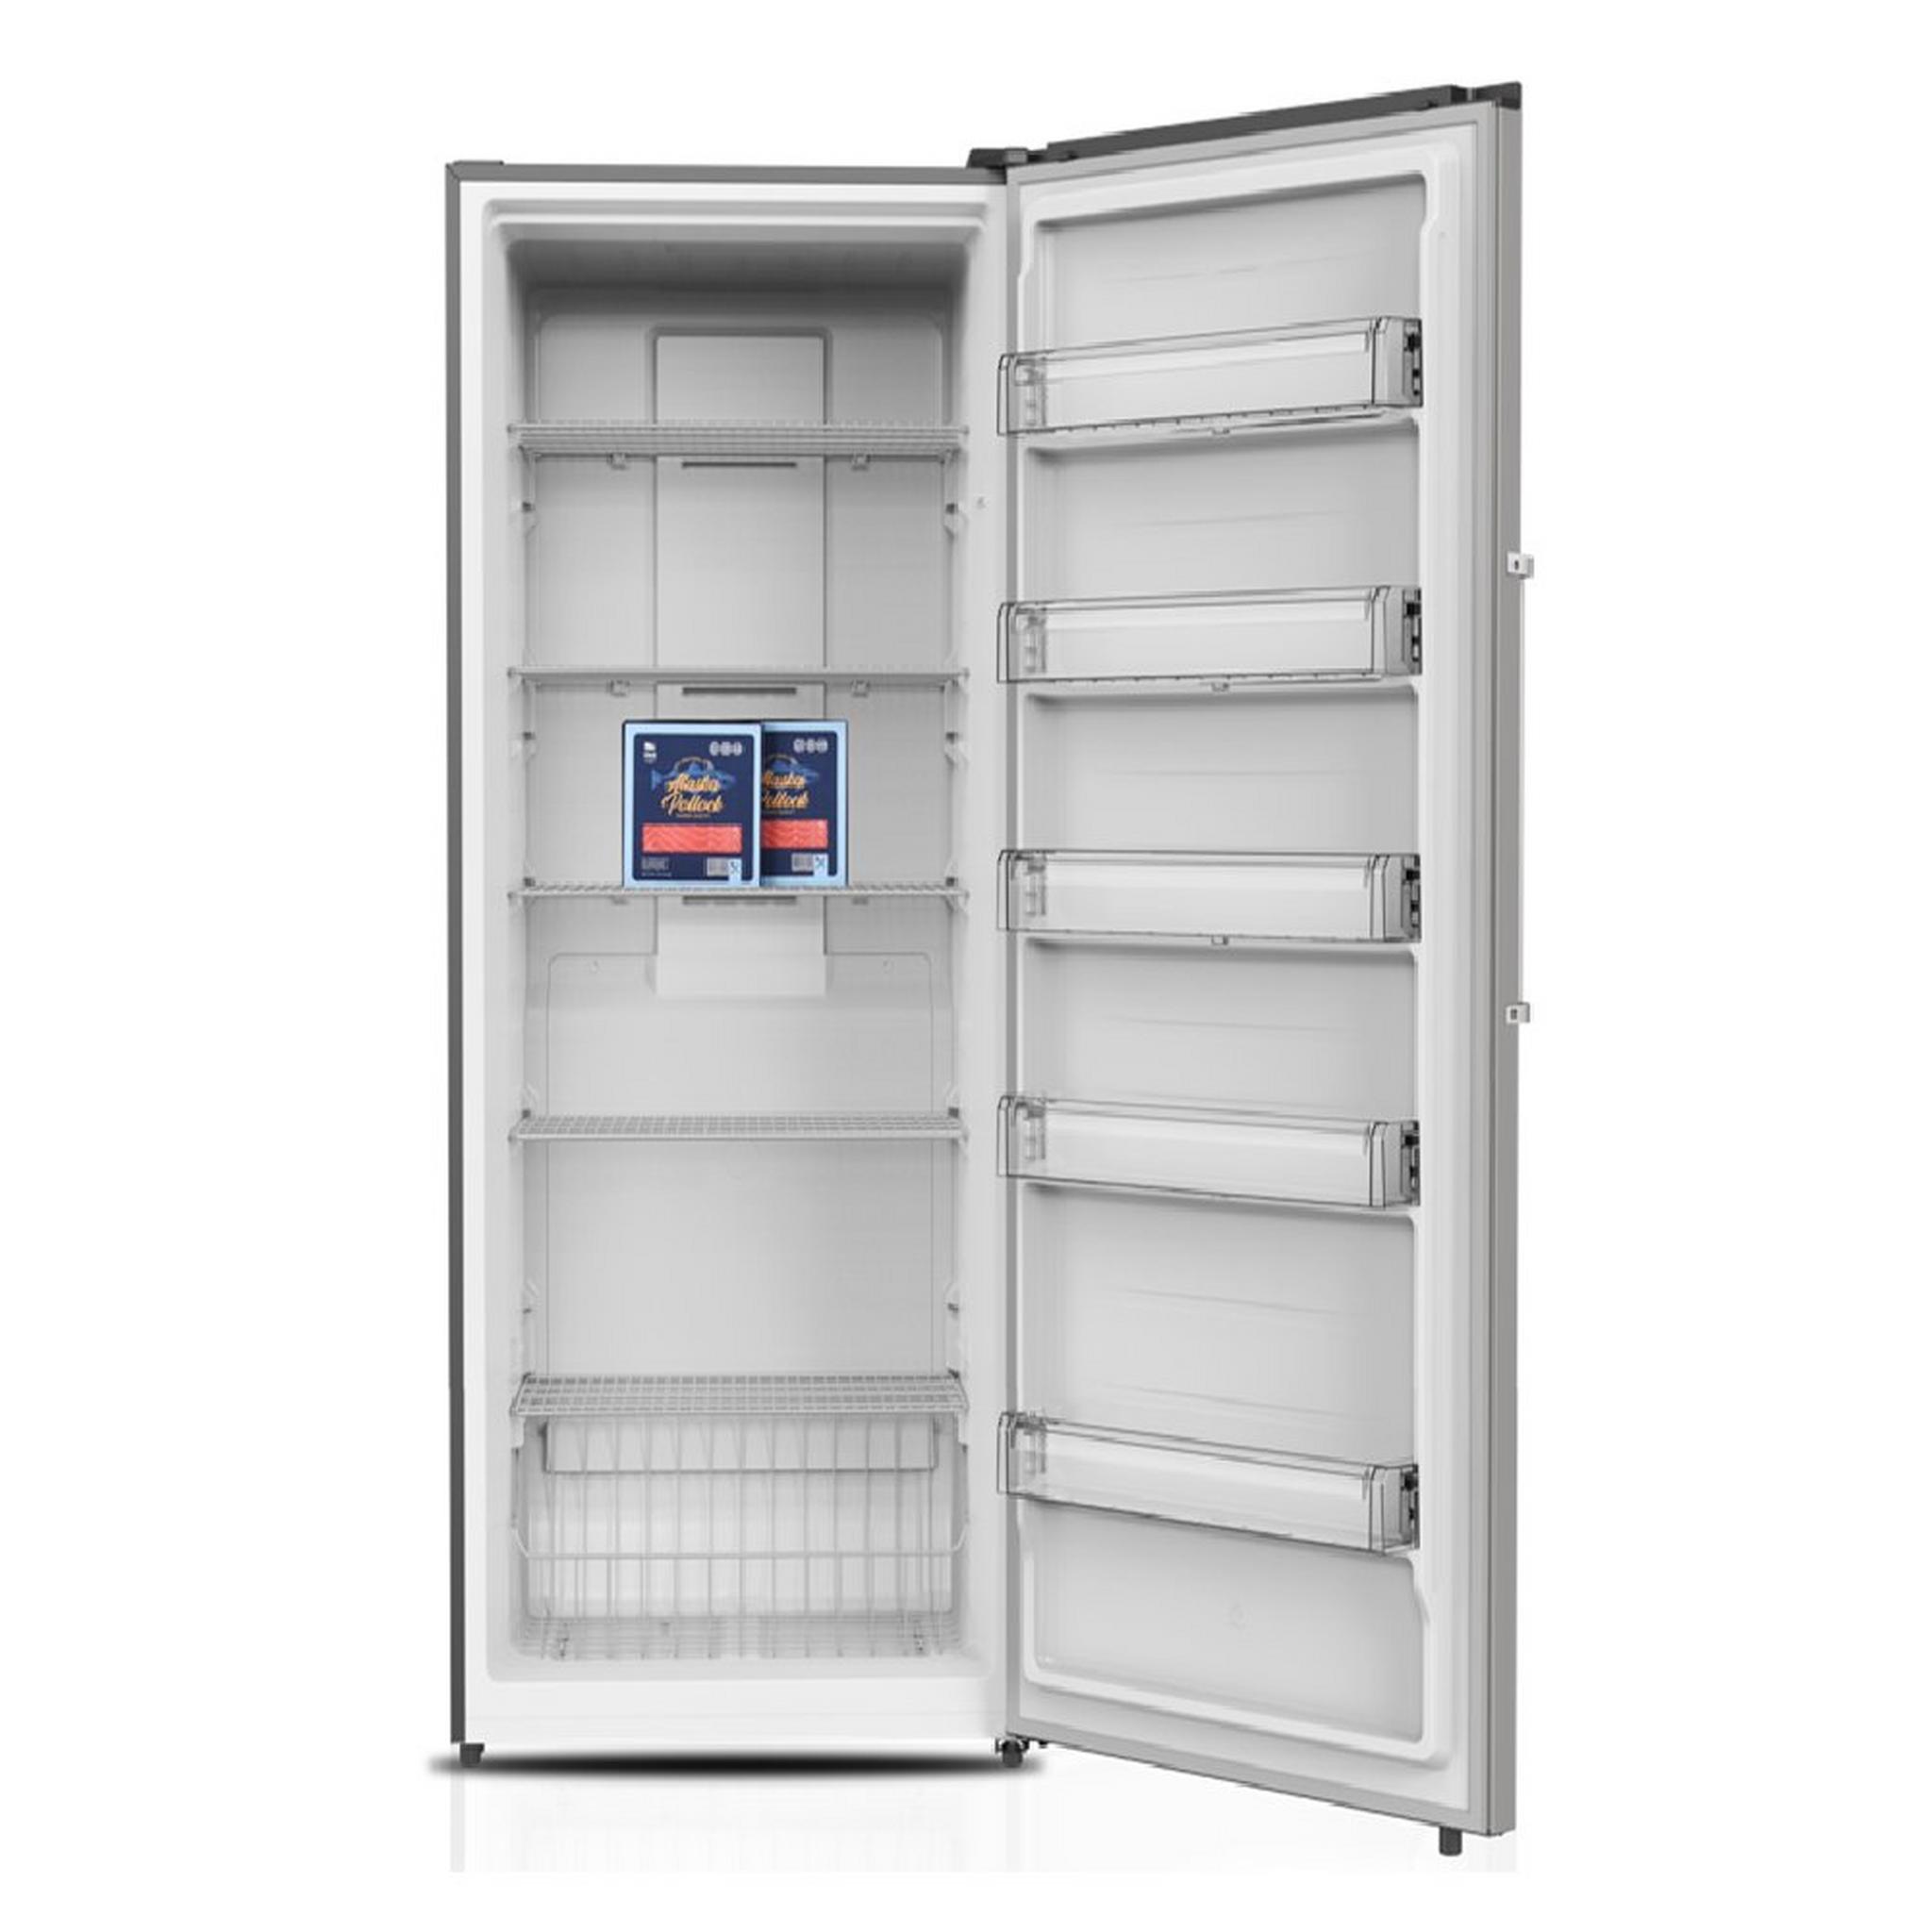 Wansa Convertible Upright freezer & Fridge, 23 CFT, 658L Capacity, WUOW600NFSC82 – Inox